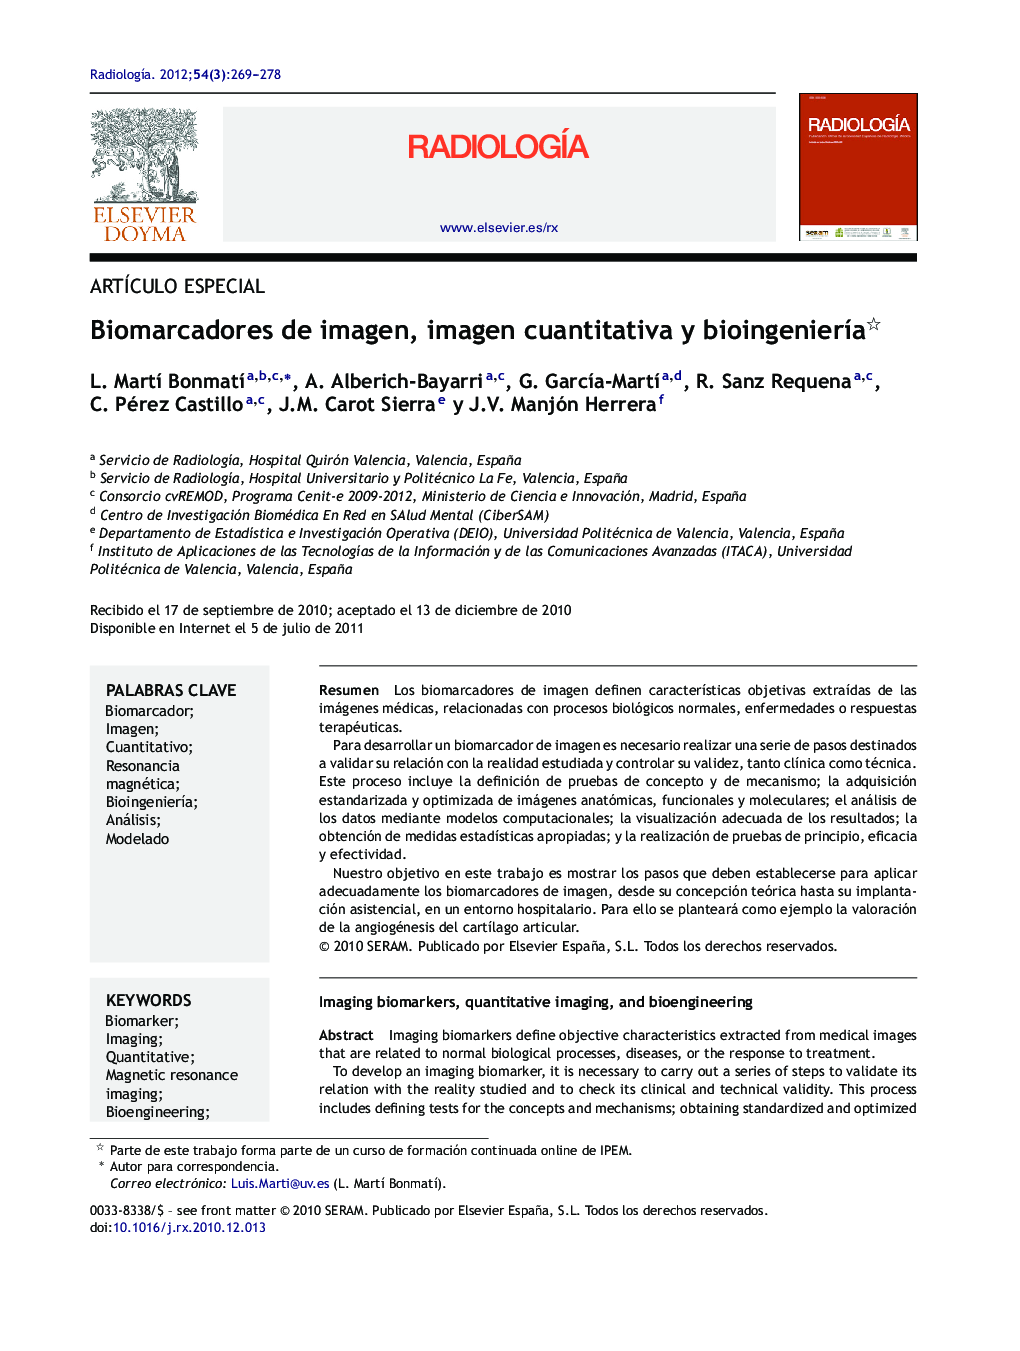 Biomarcadores de imagen, imagen cuantitativa y bioingenierÃ­a